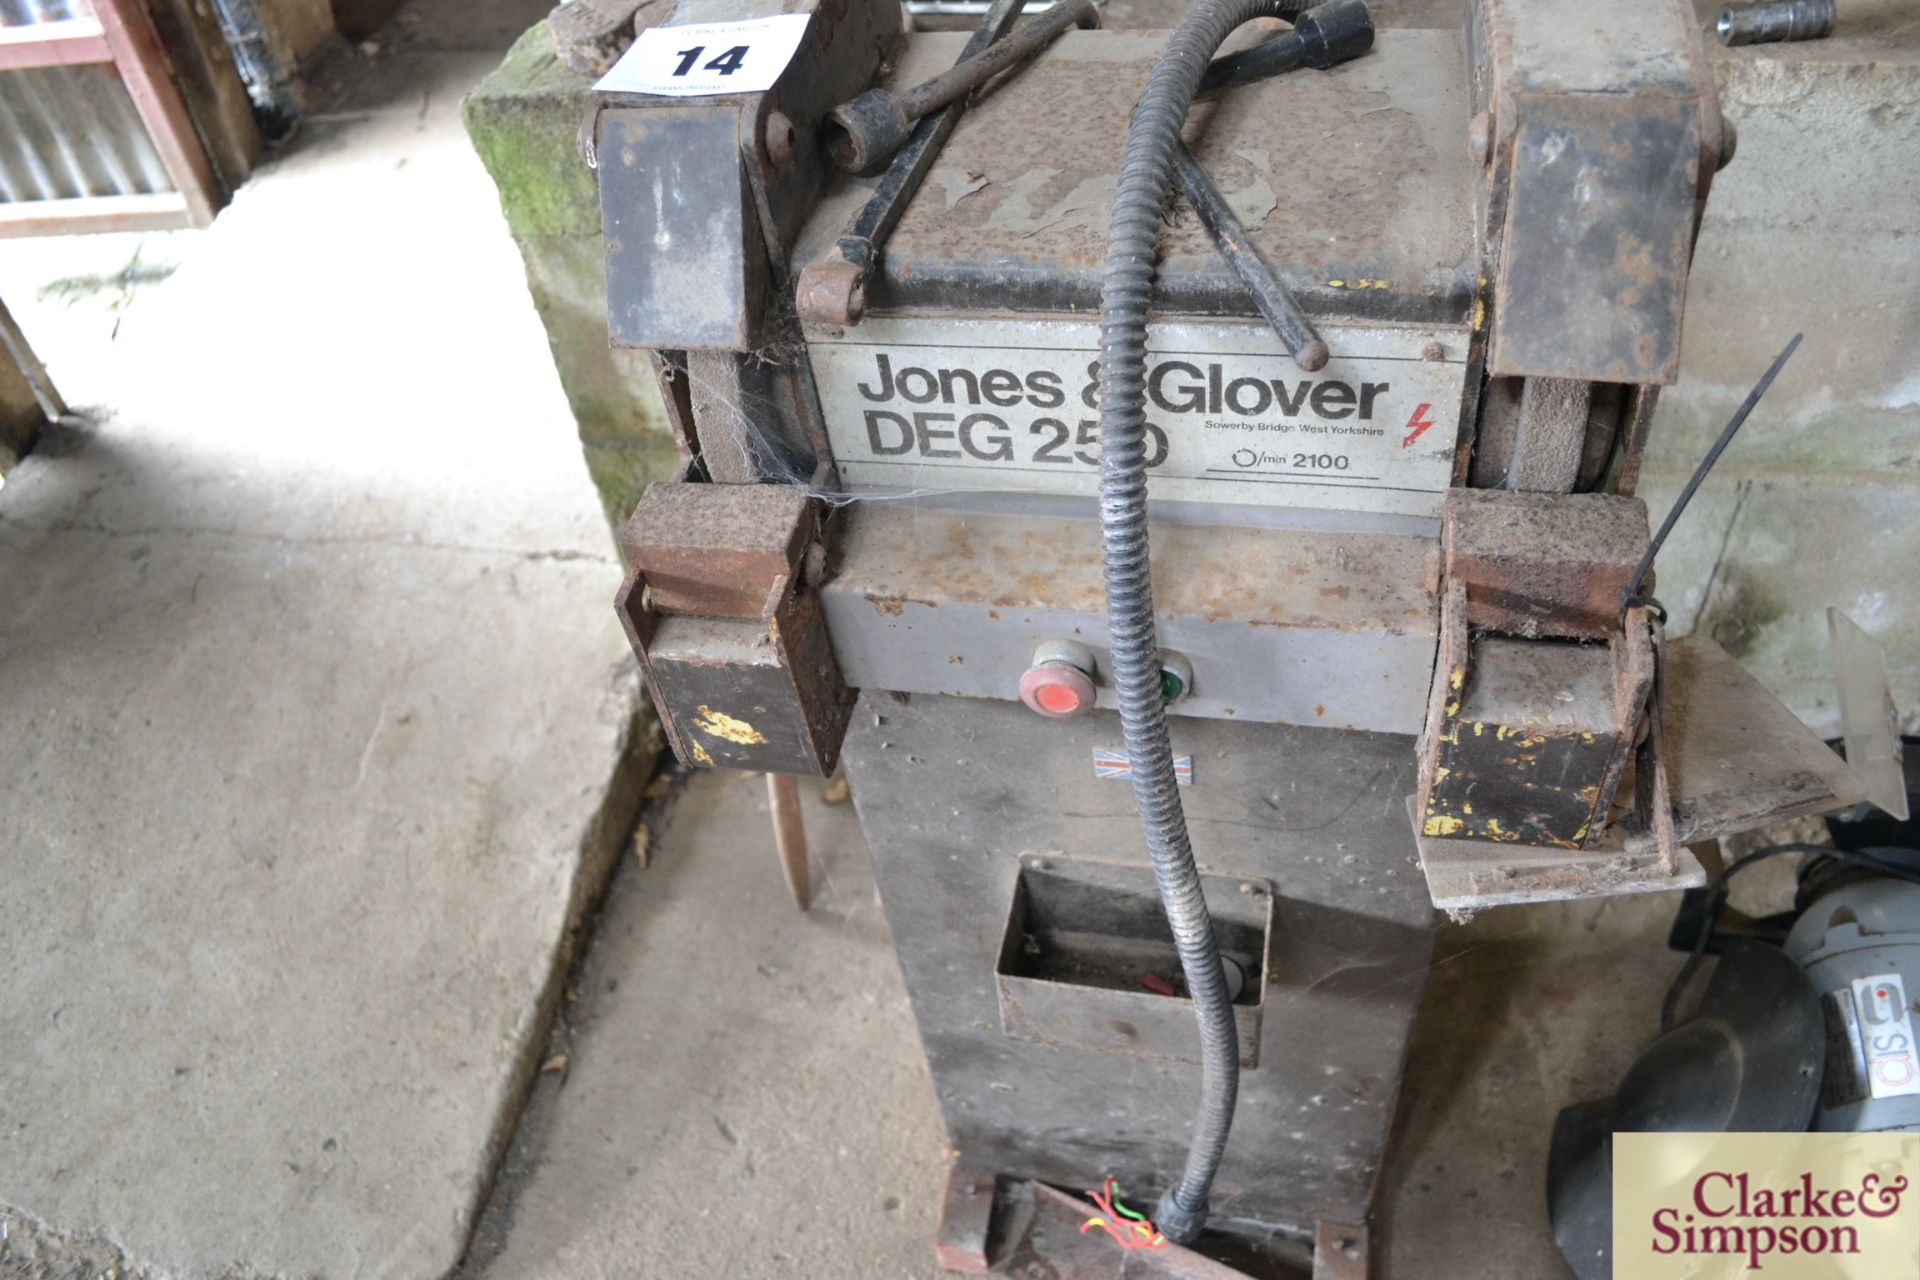 Jones & Clover pedestal bench grinder. - Image 3 of 4